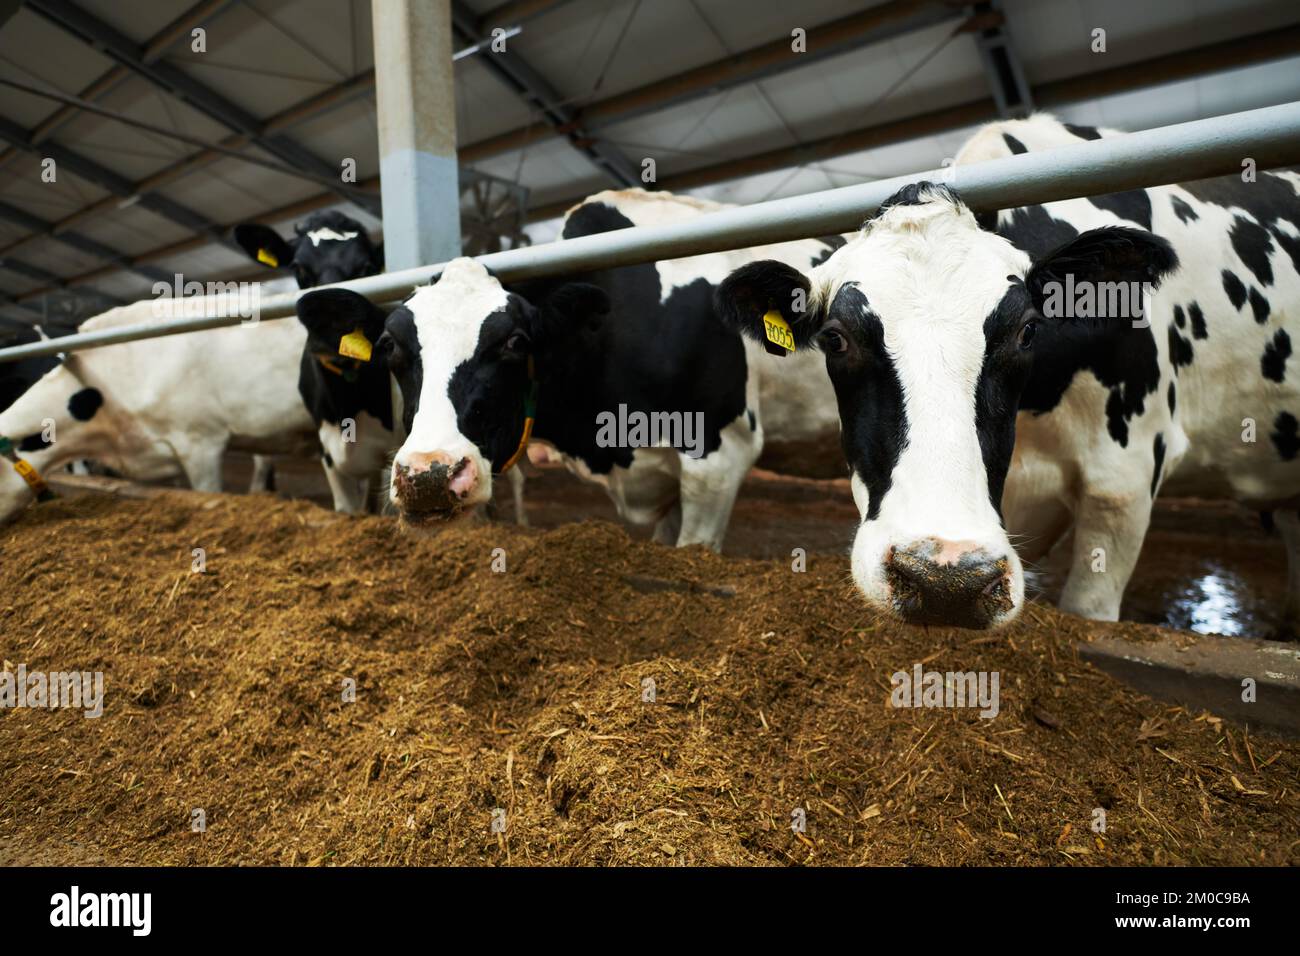 Groupe de vaches laitières de race noire et blanche debout dans un abri de vache devant le convoyeur et la forge de manger pendant que l'un d'eux regarde la caméra Banque D'Images